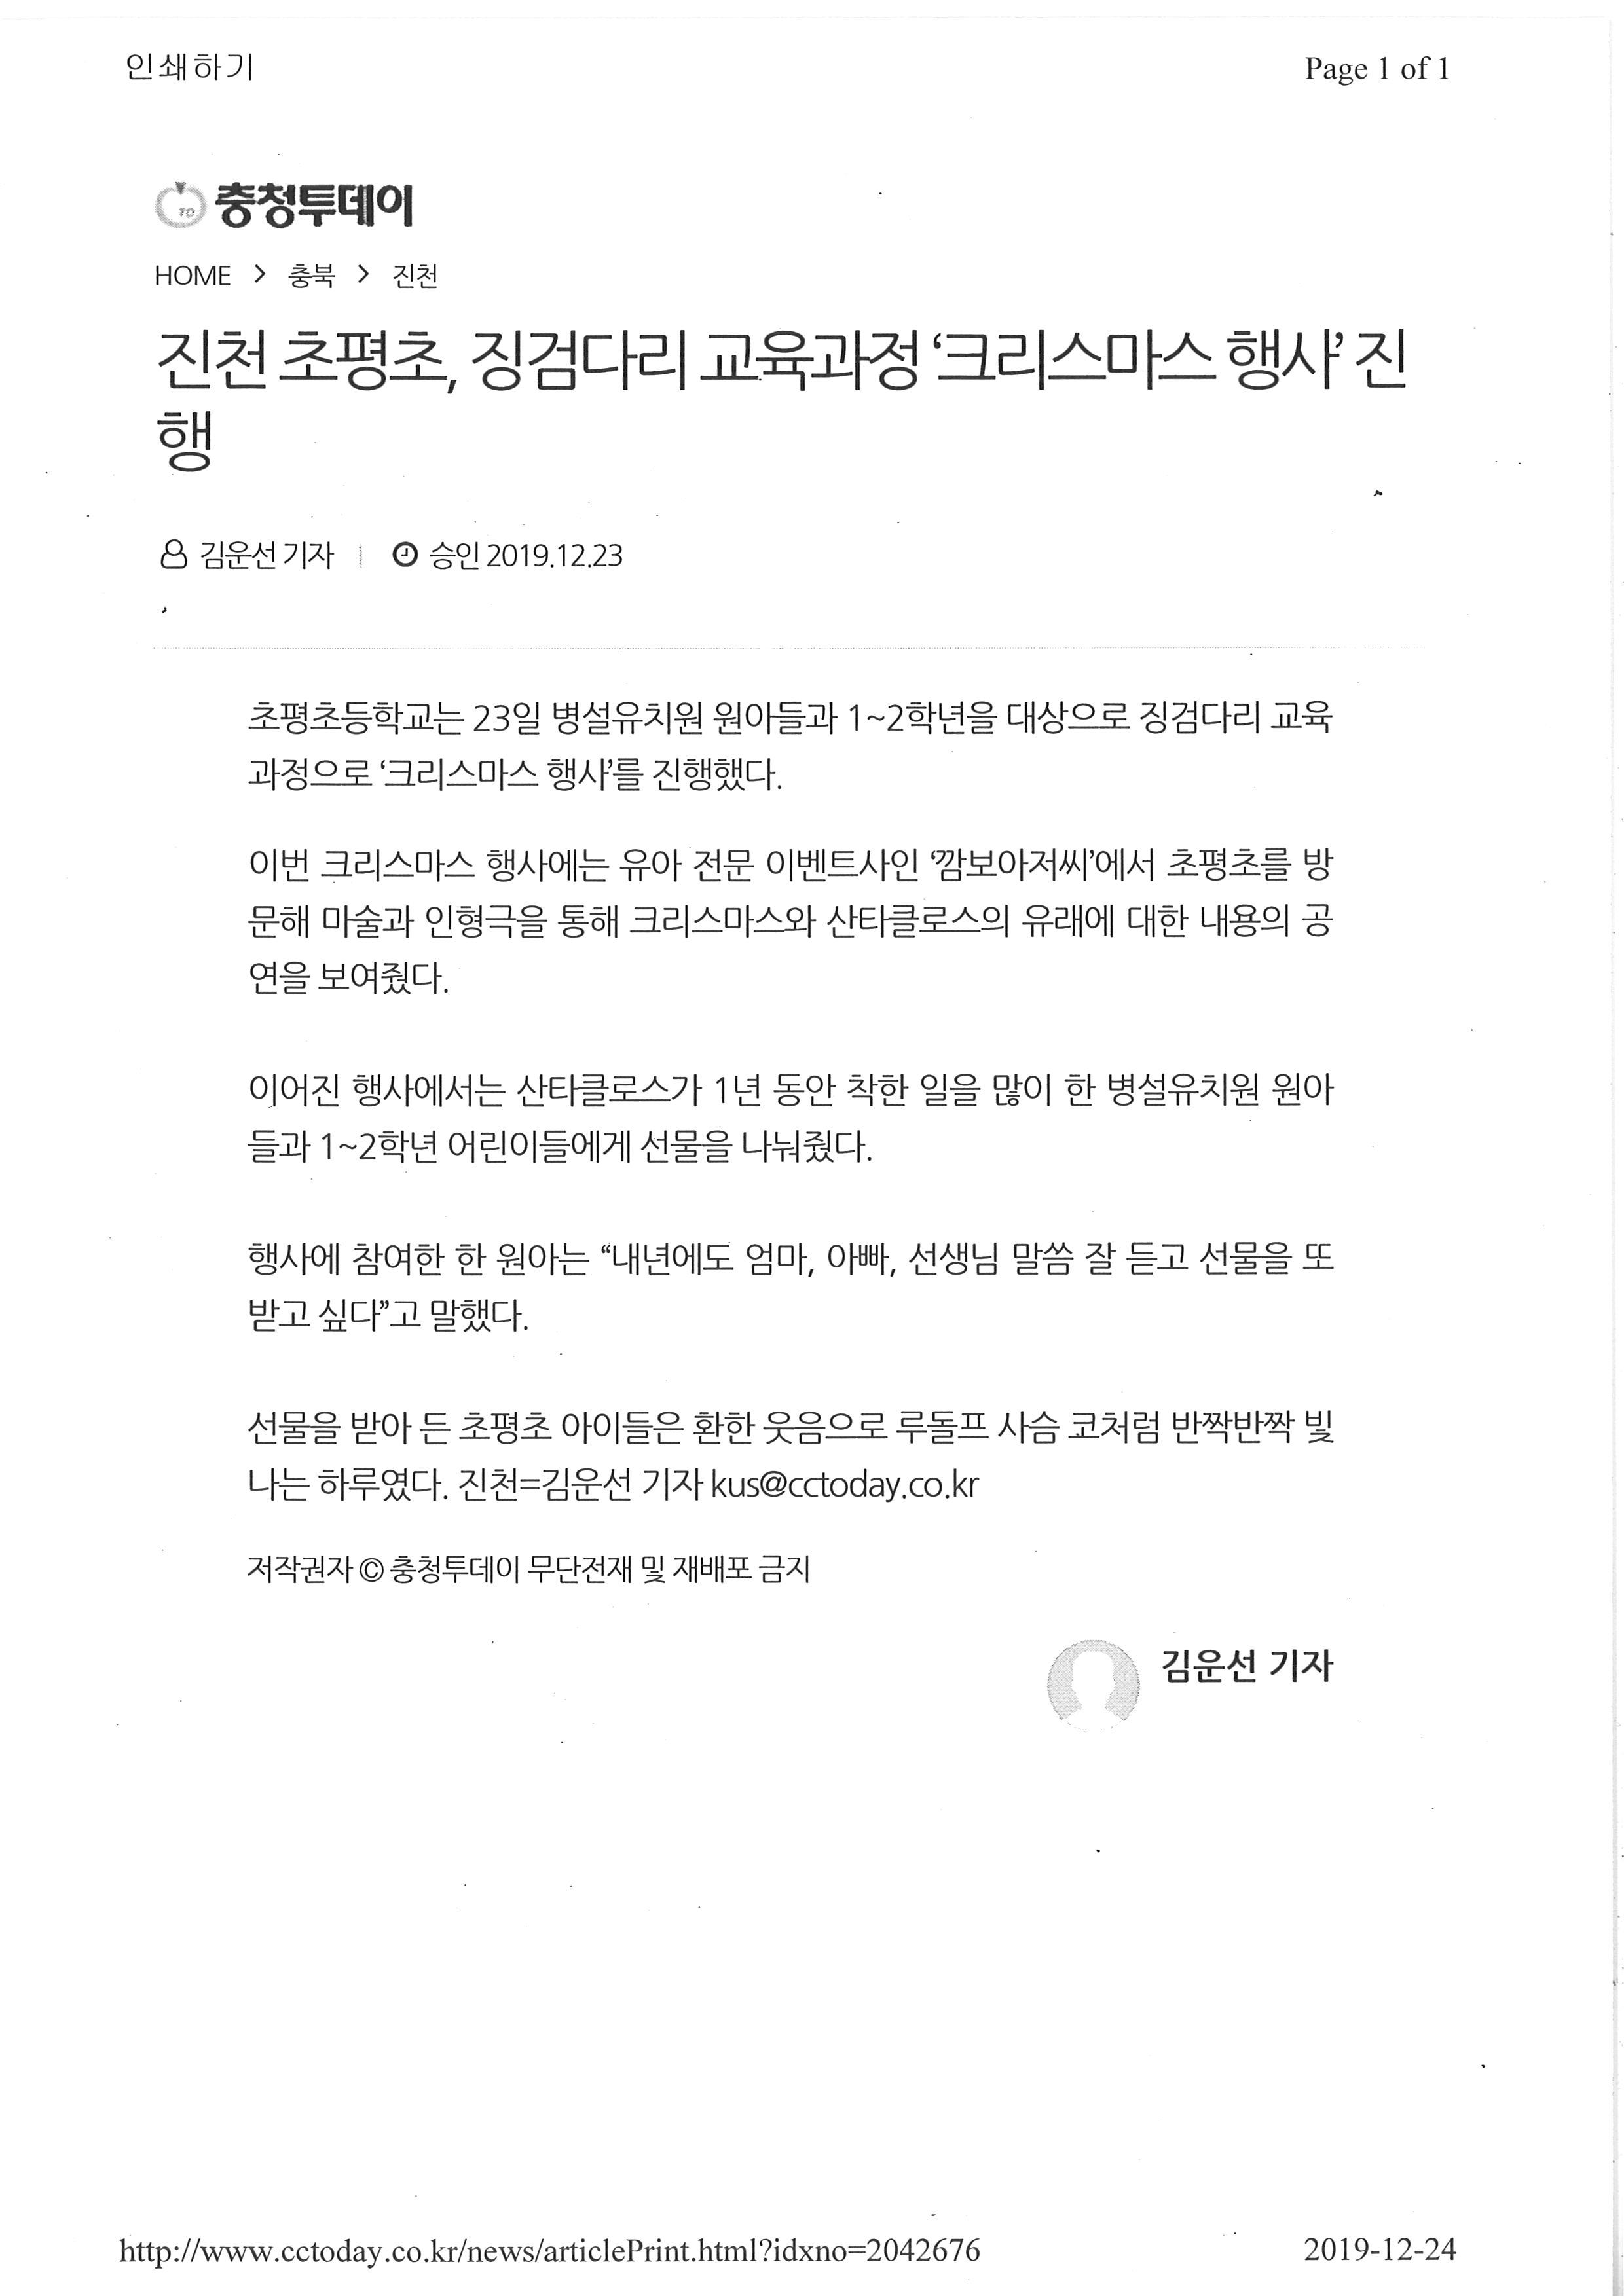 2019.12.24(충청투데이)-진천초평초,징검다리 교육과정, 크리스마스행사 열려